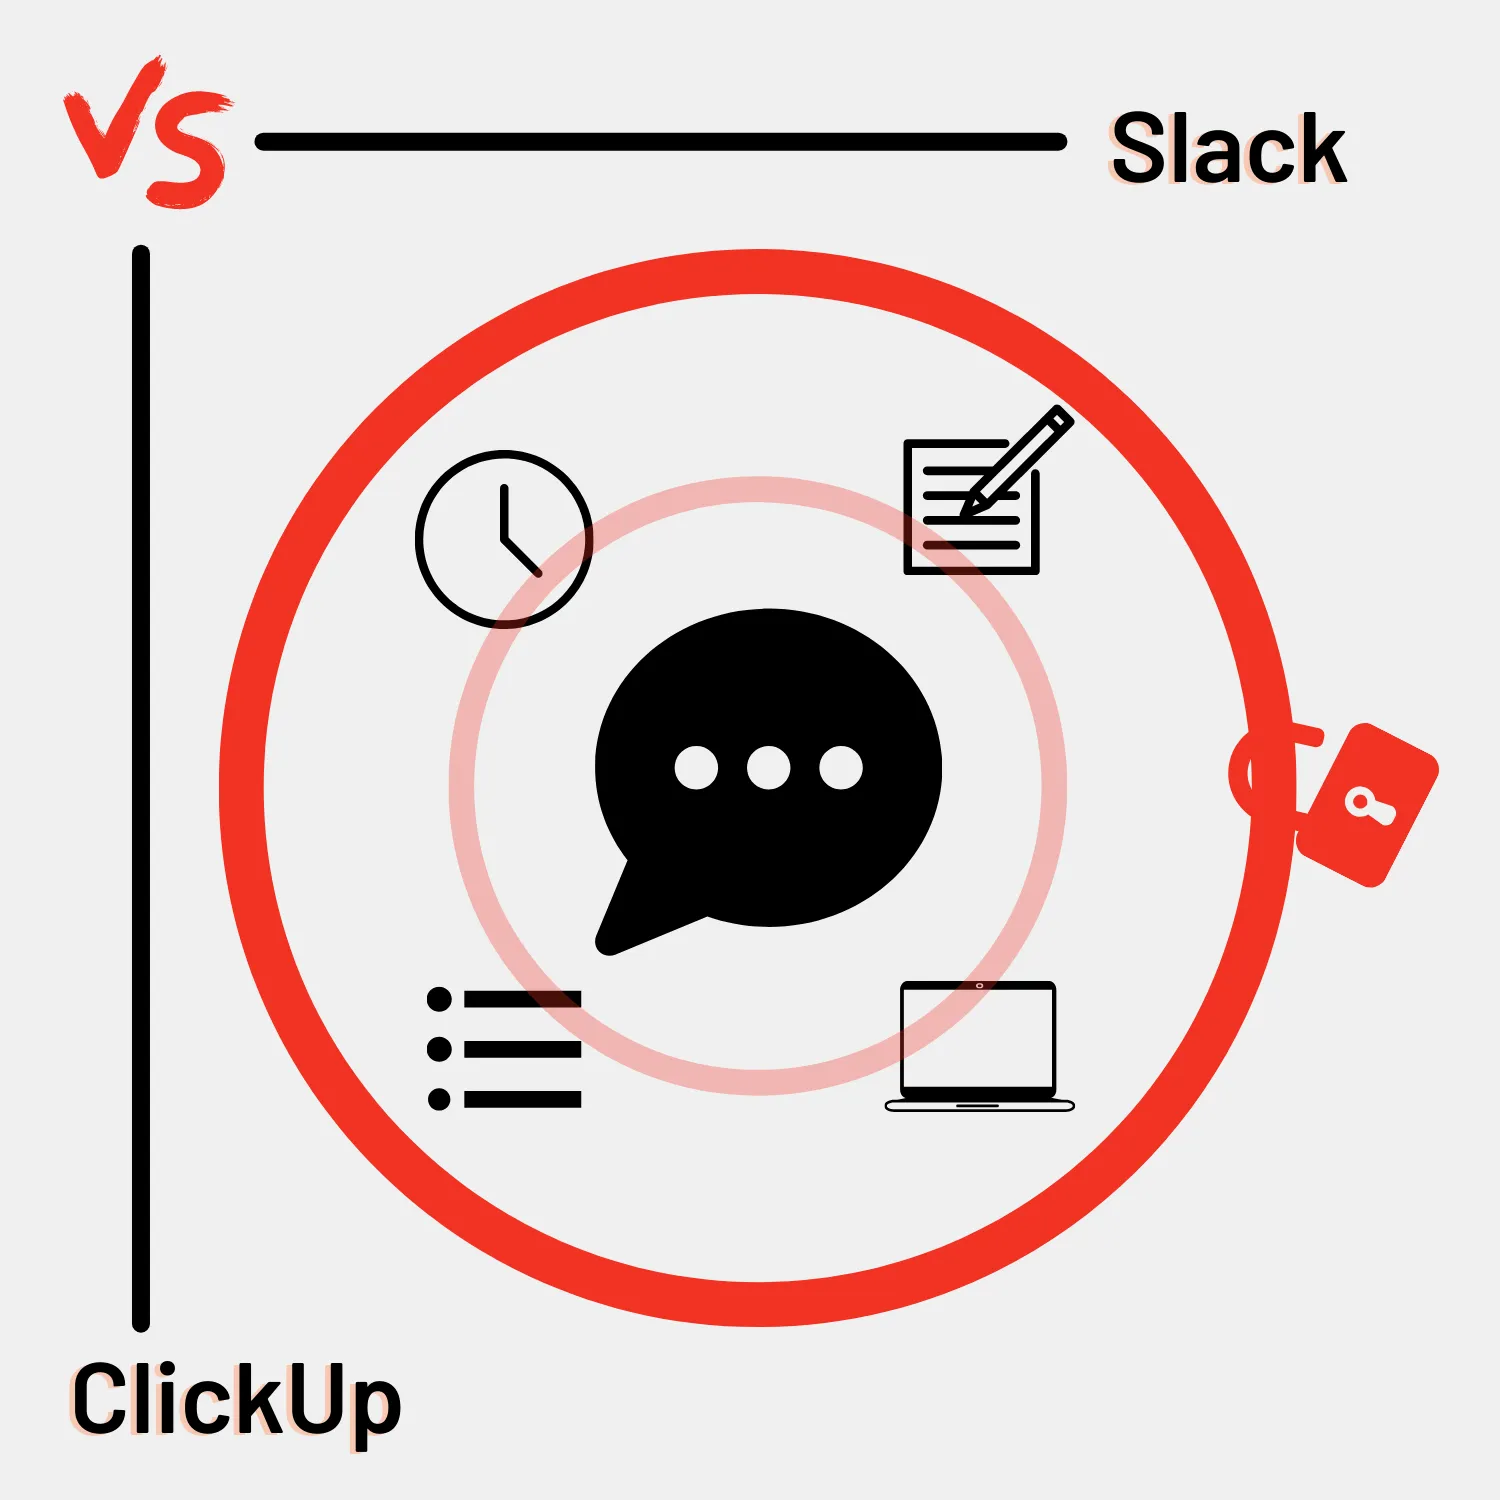 Slack vs ClickUp